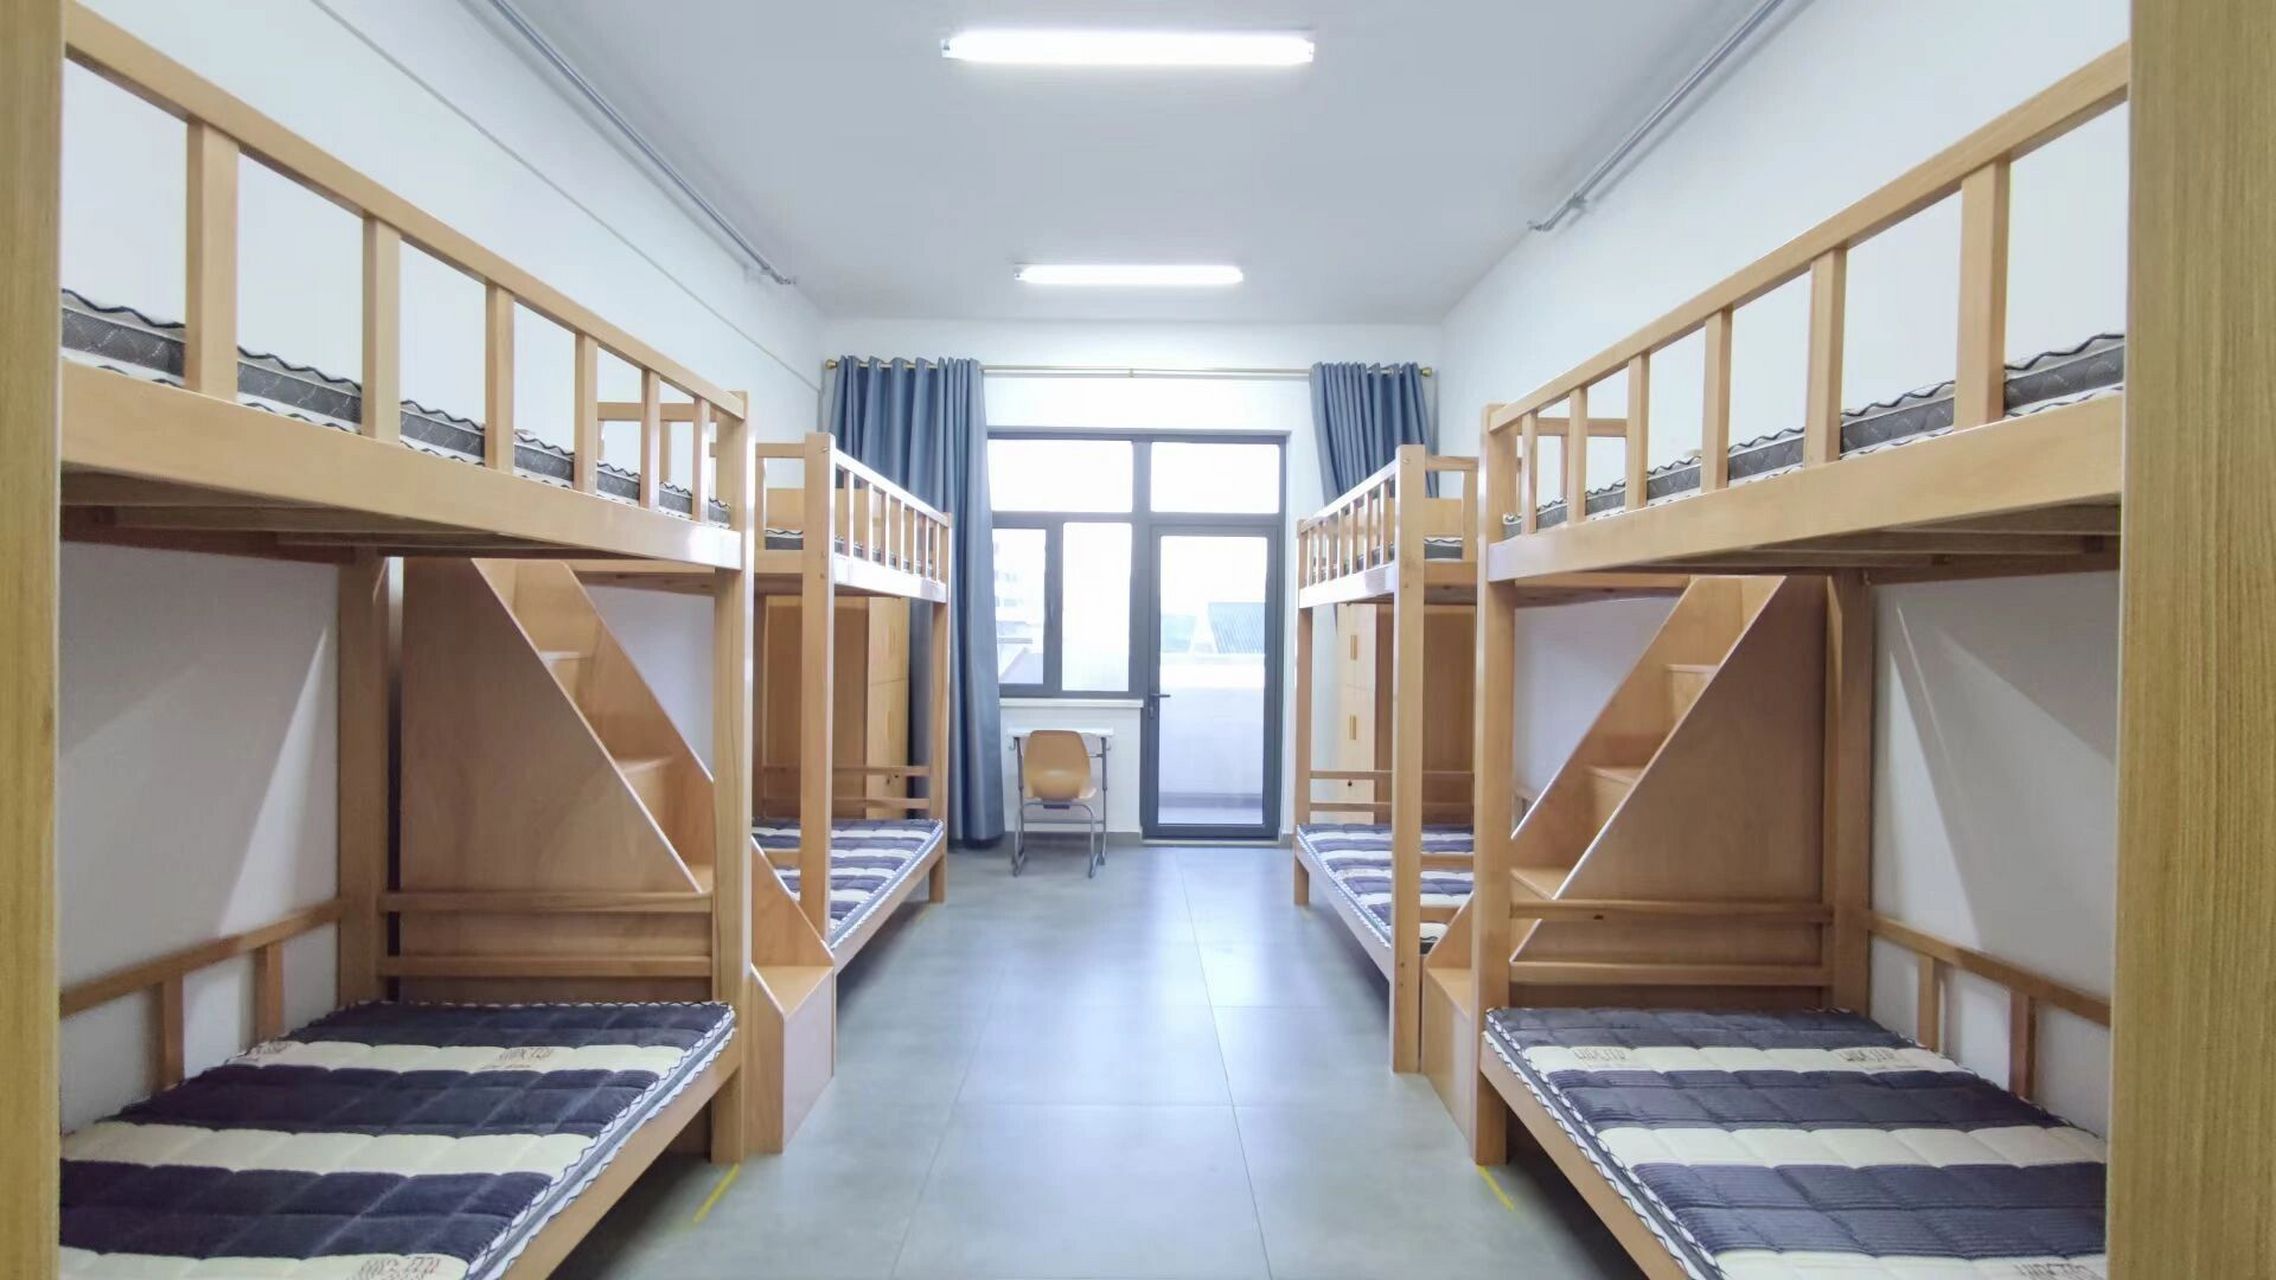 潍坊一中未来实验校区宿舍大揭秘      8人间上下铺,每层配备全自动